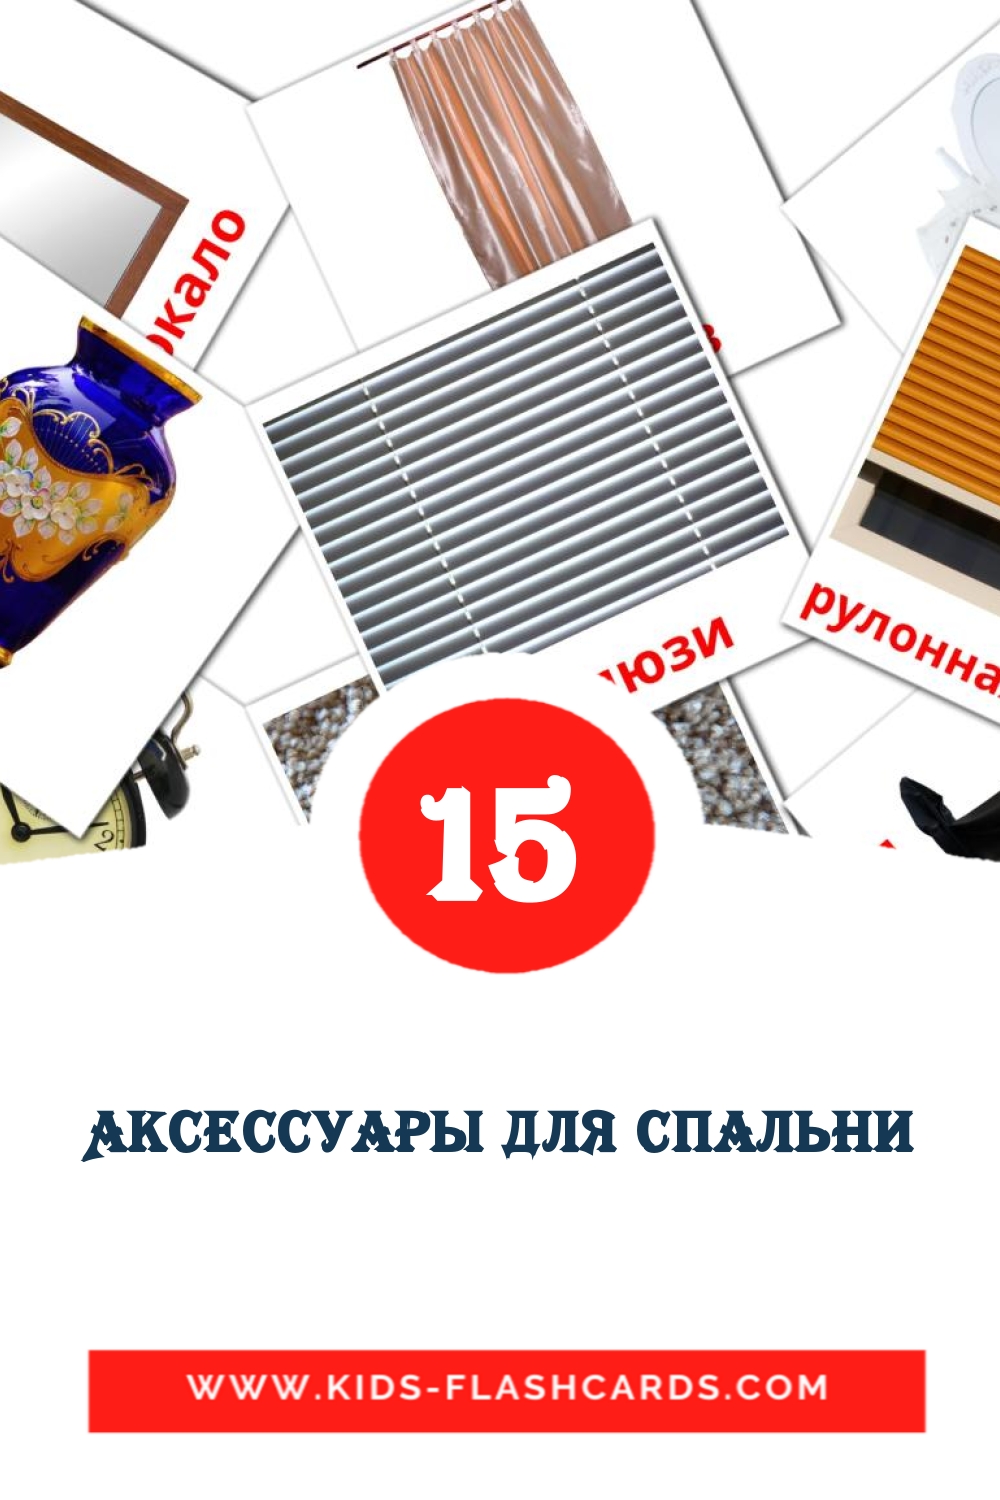 15 Cartões com Imagens de Аксессуары для спальни para Jardim de Infância em russas